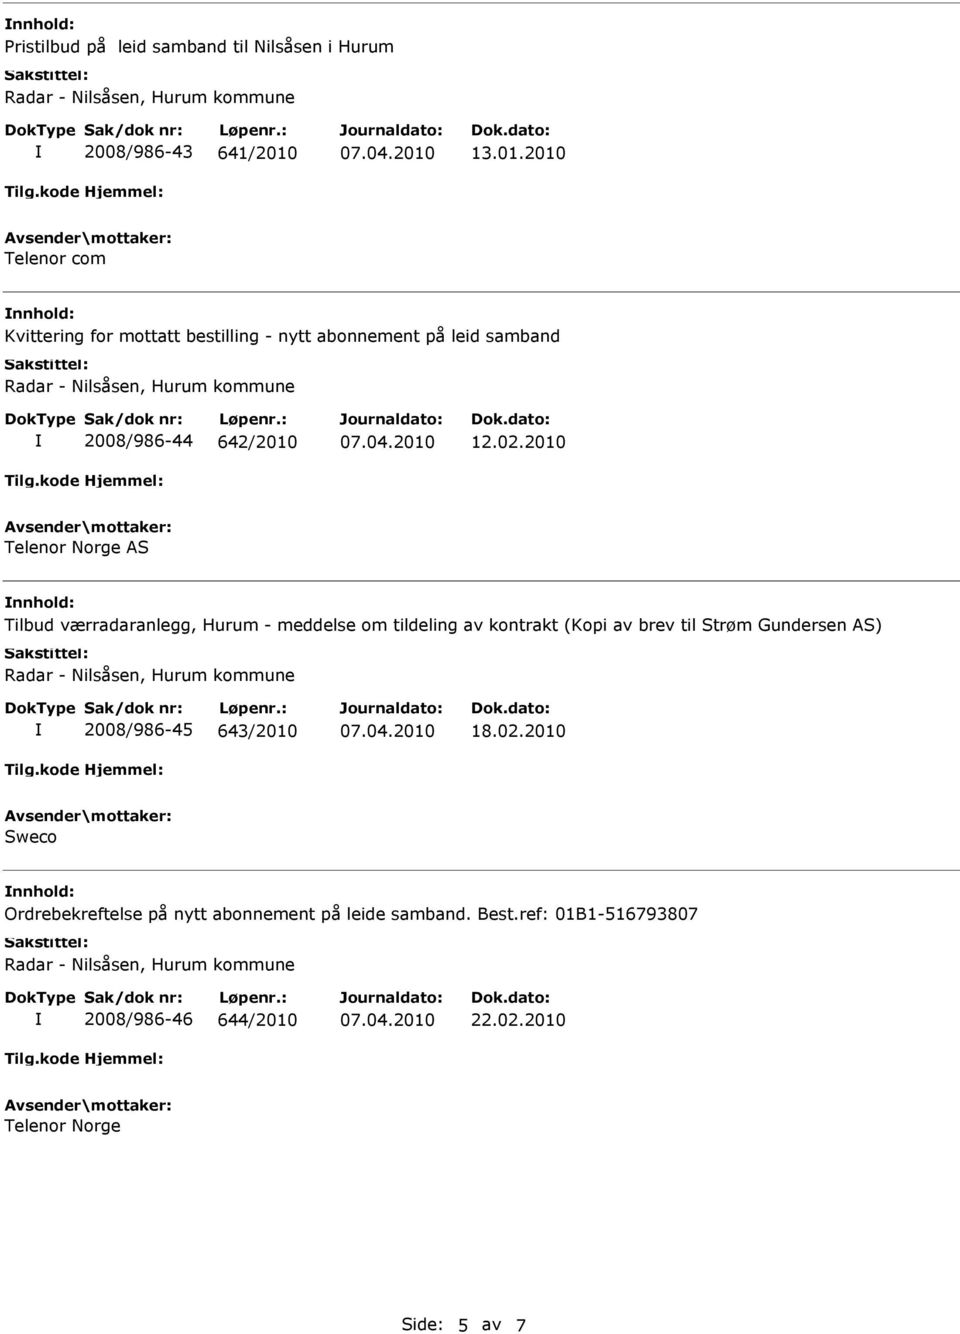 2010 Telenor Norge AS Tilbud værradaranlegg, Hurum - meddelse om tildeling av kontrakt (Kopi av brev til Strøm Gundersen